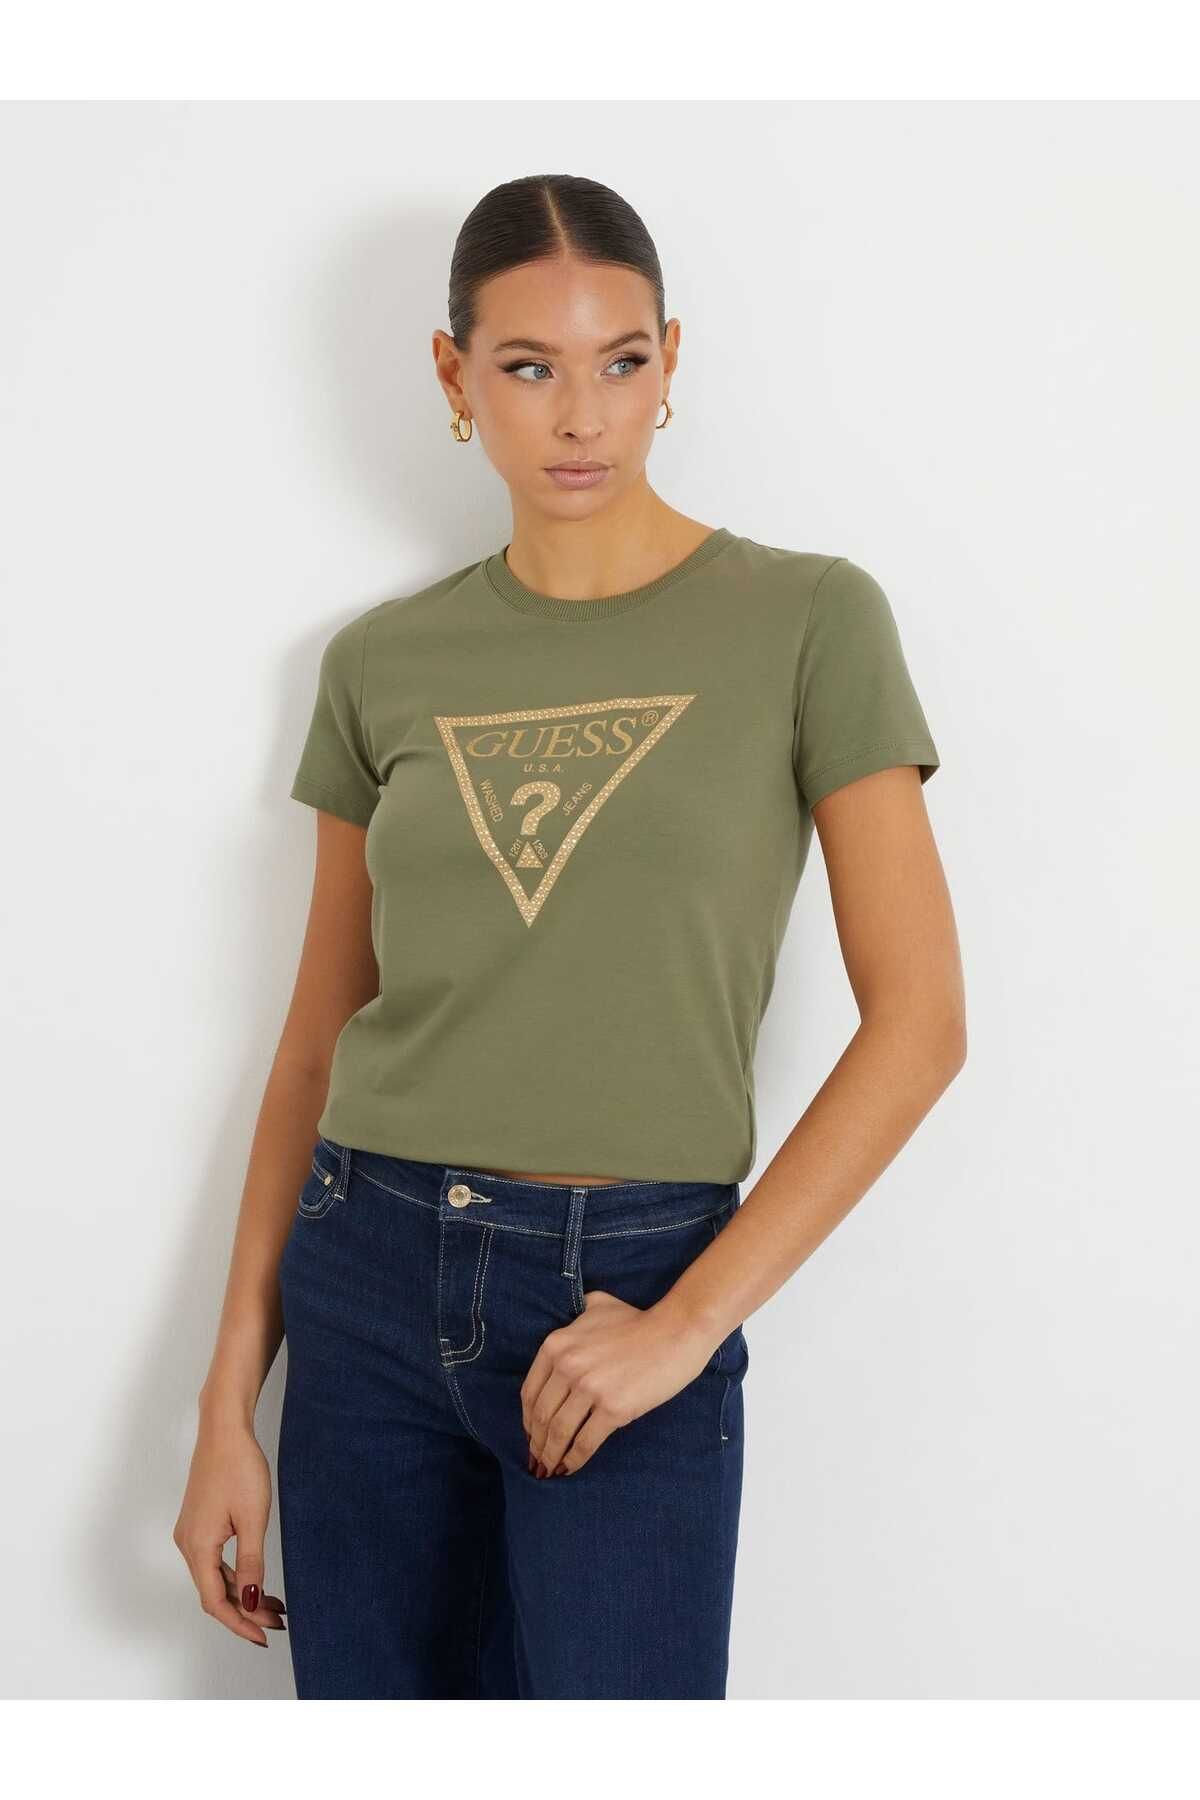 Guess Gold Triangle Kadın Regular Fit T-Shirt